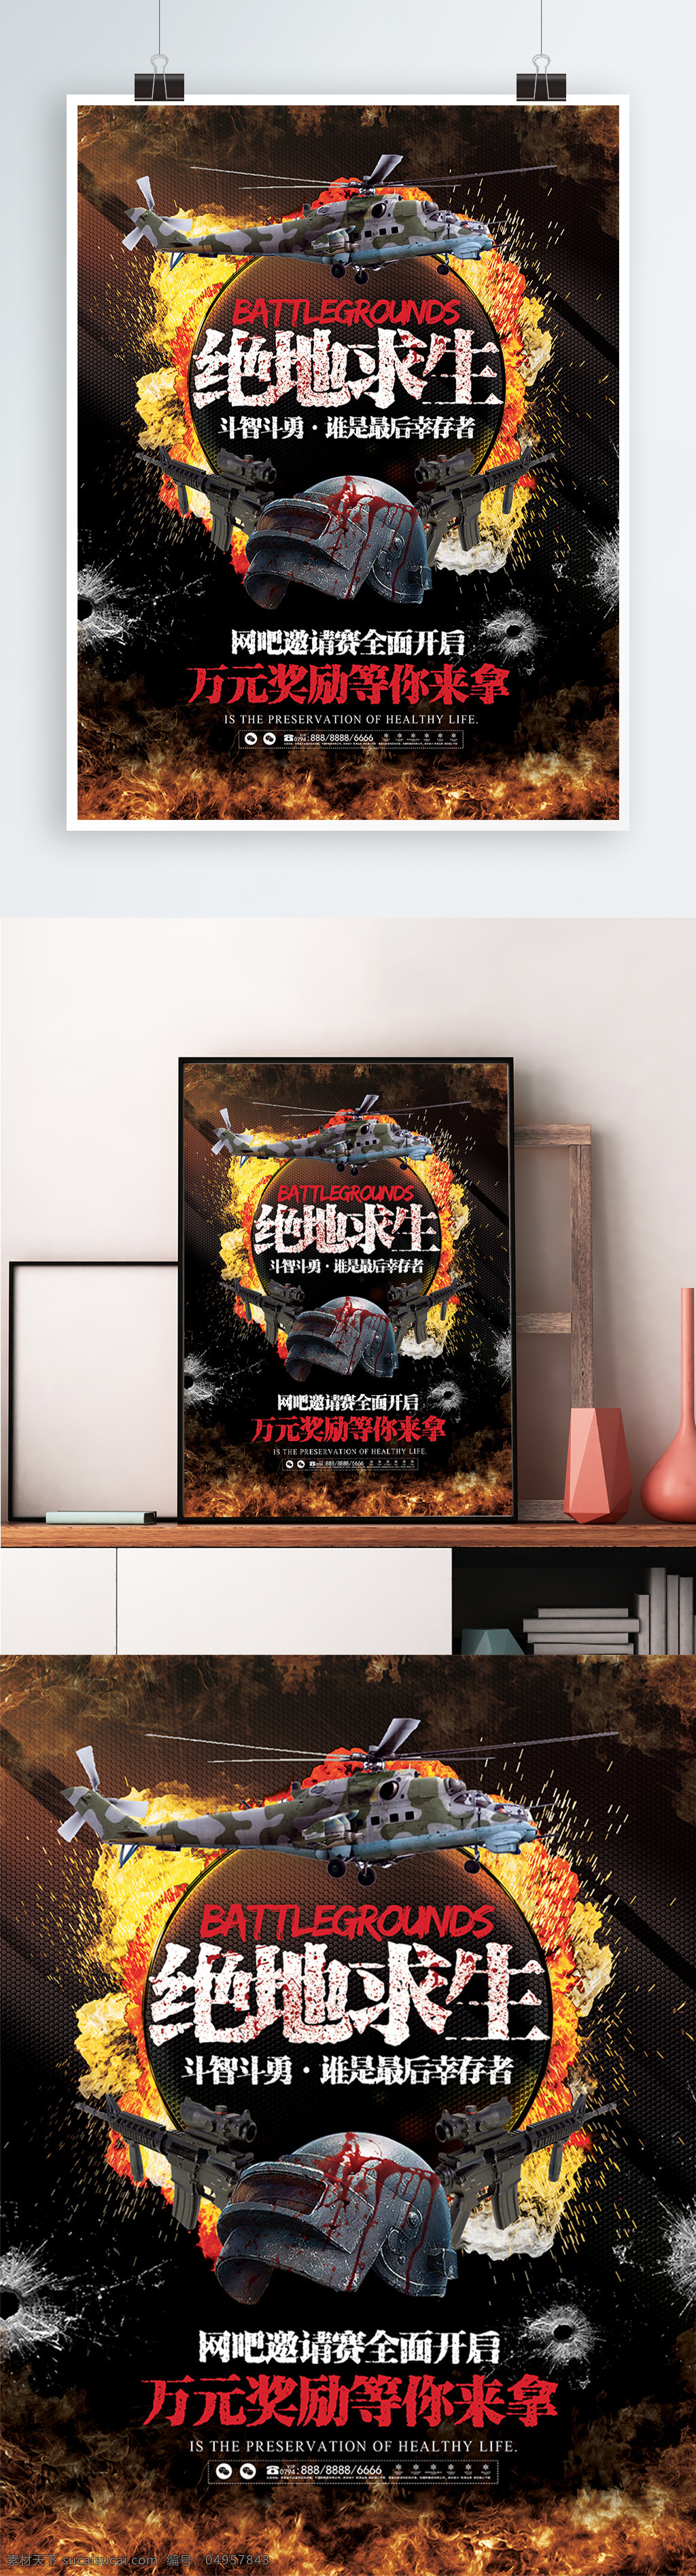 酷 炫 绝地 求生 游戏 网吧 邀请赛 竞技 海报 展板 酷炫 绝地求生 爆炸 火焰 比赛 宣传